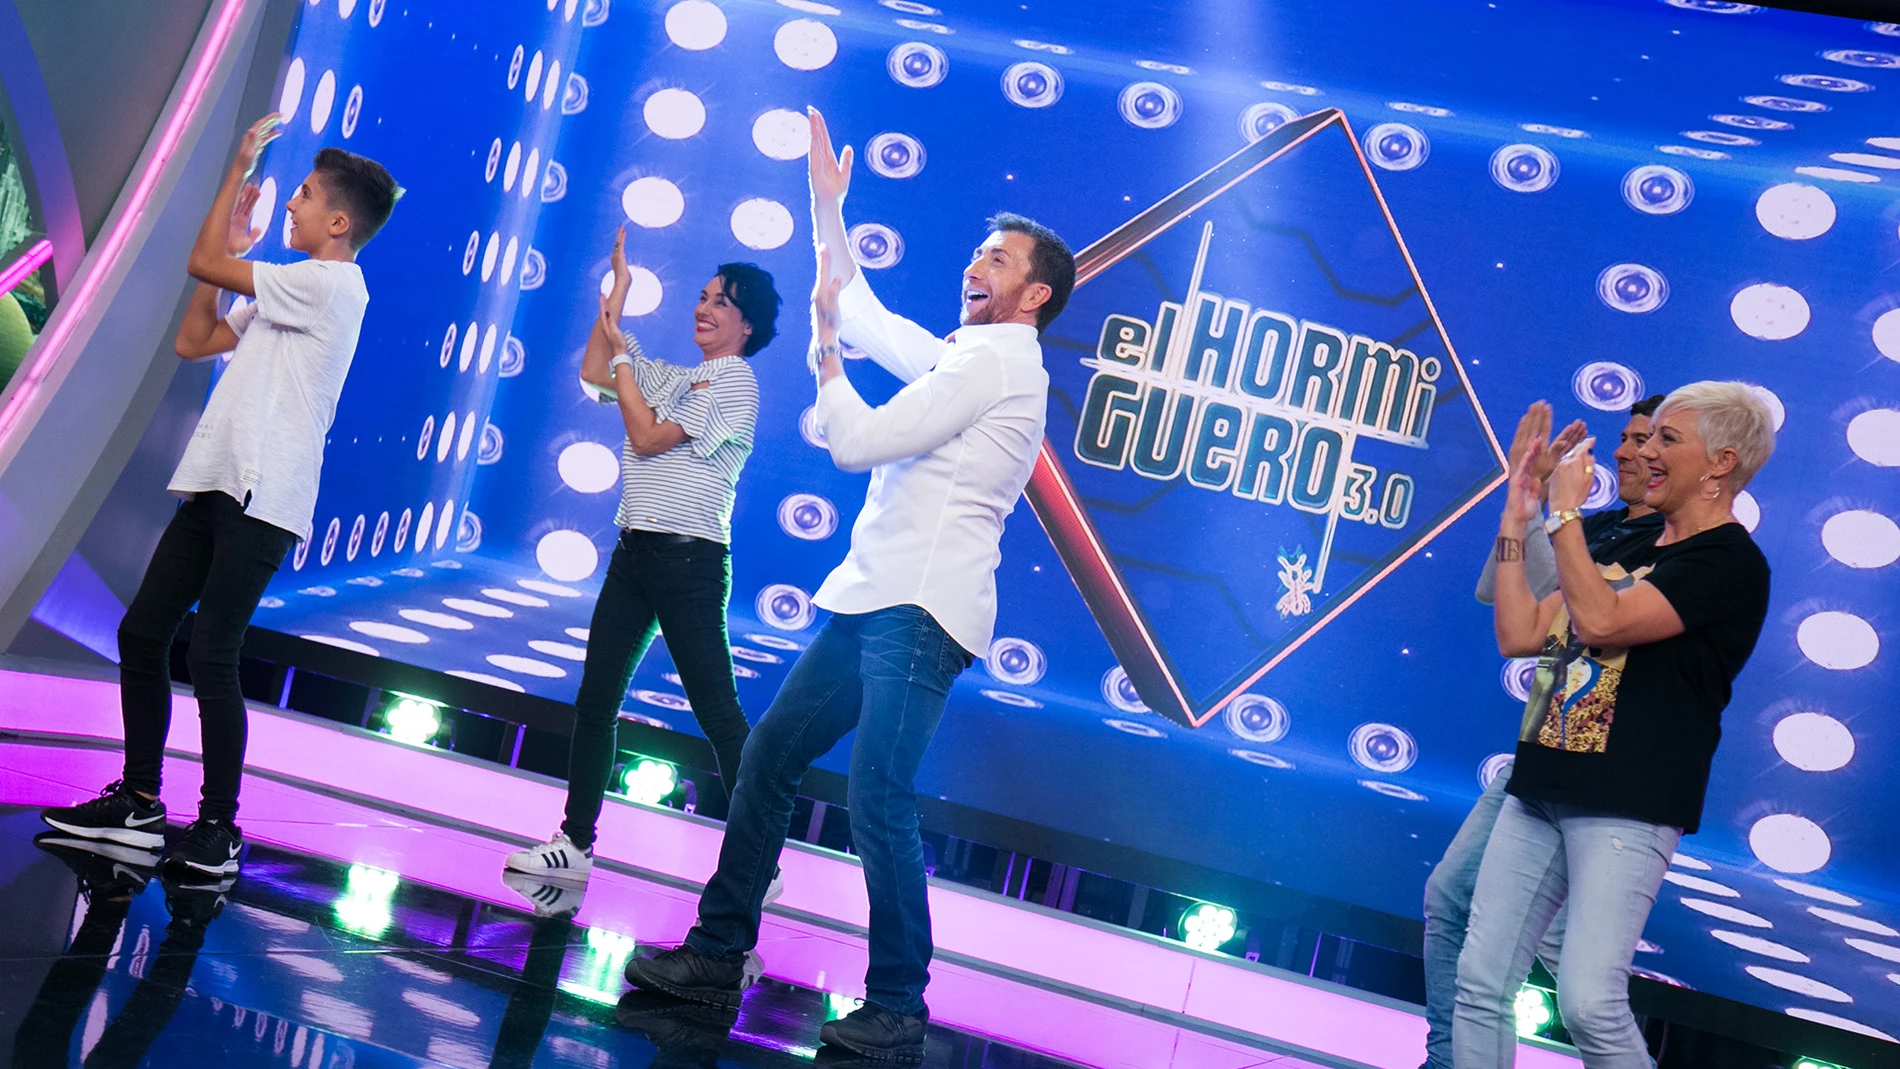 La familia Luque Hernández empieza 'El Hormiguero 3.0' bailando con muchísima energía